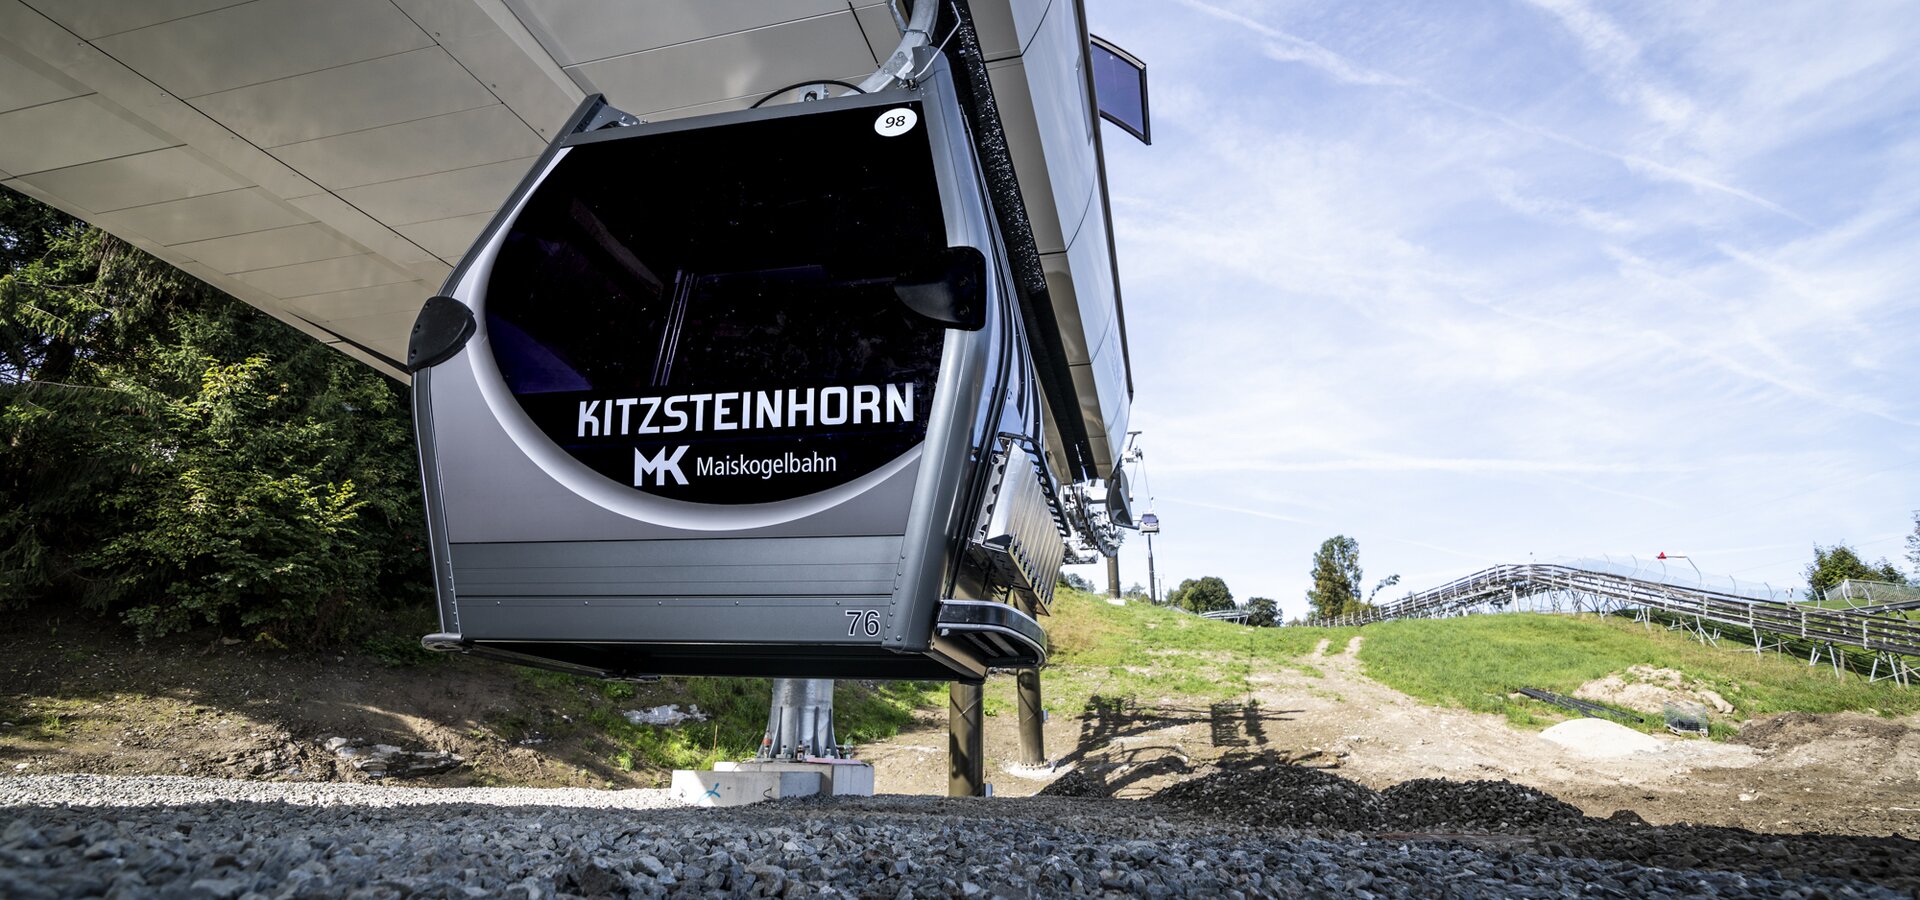 Mit den ersten Kabinen, geliefert vom Südtiroler Seilbahnbauer Leitner, konnte bereits der Probebetrieb gestartet werden. | © Kitzsteinhorn